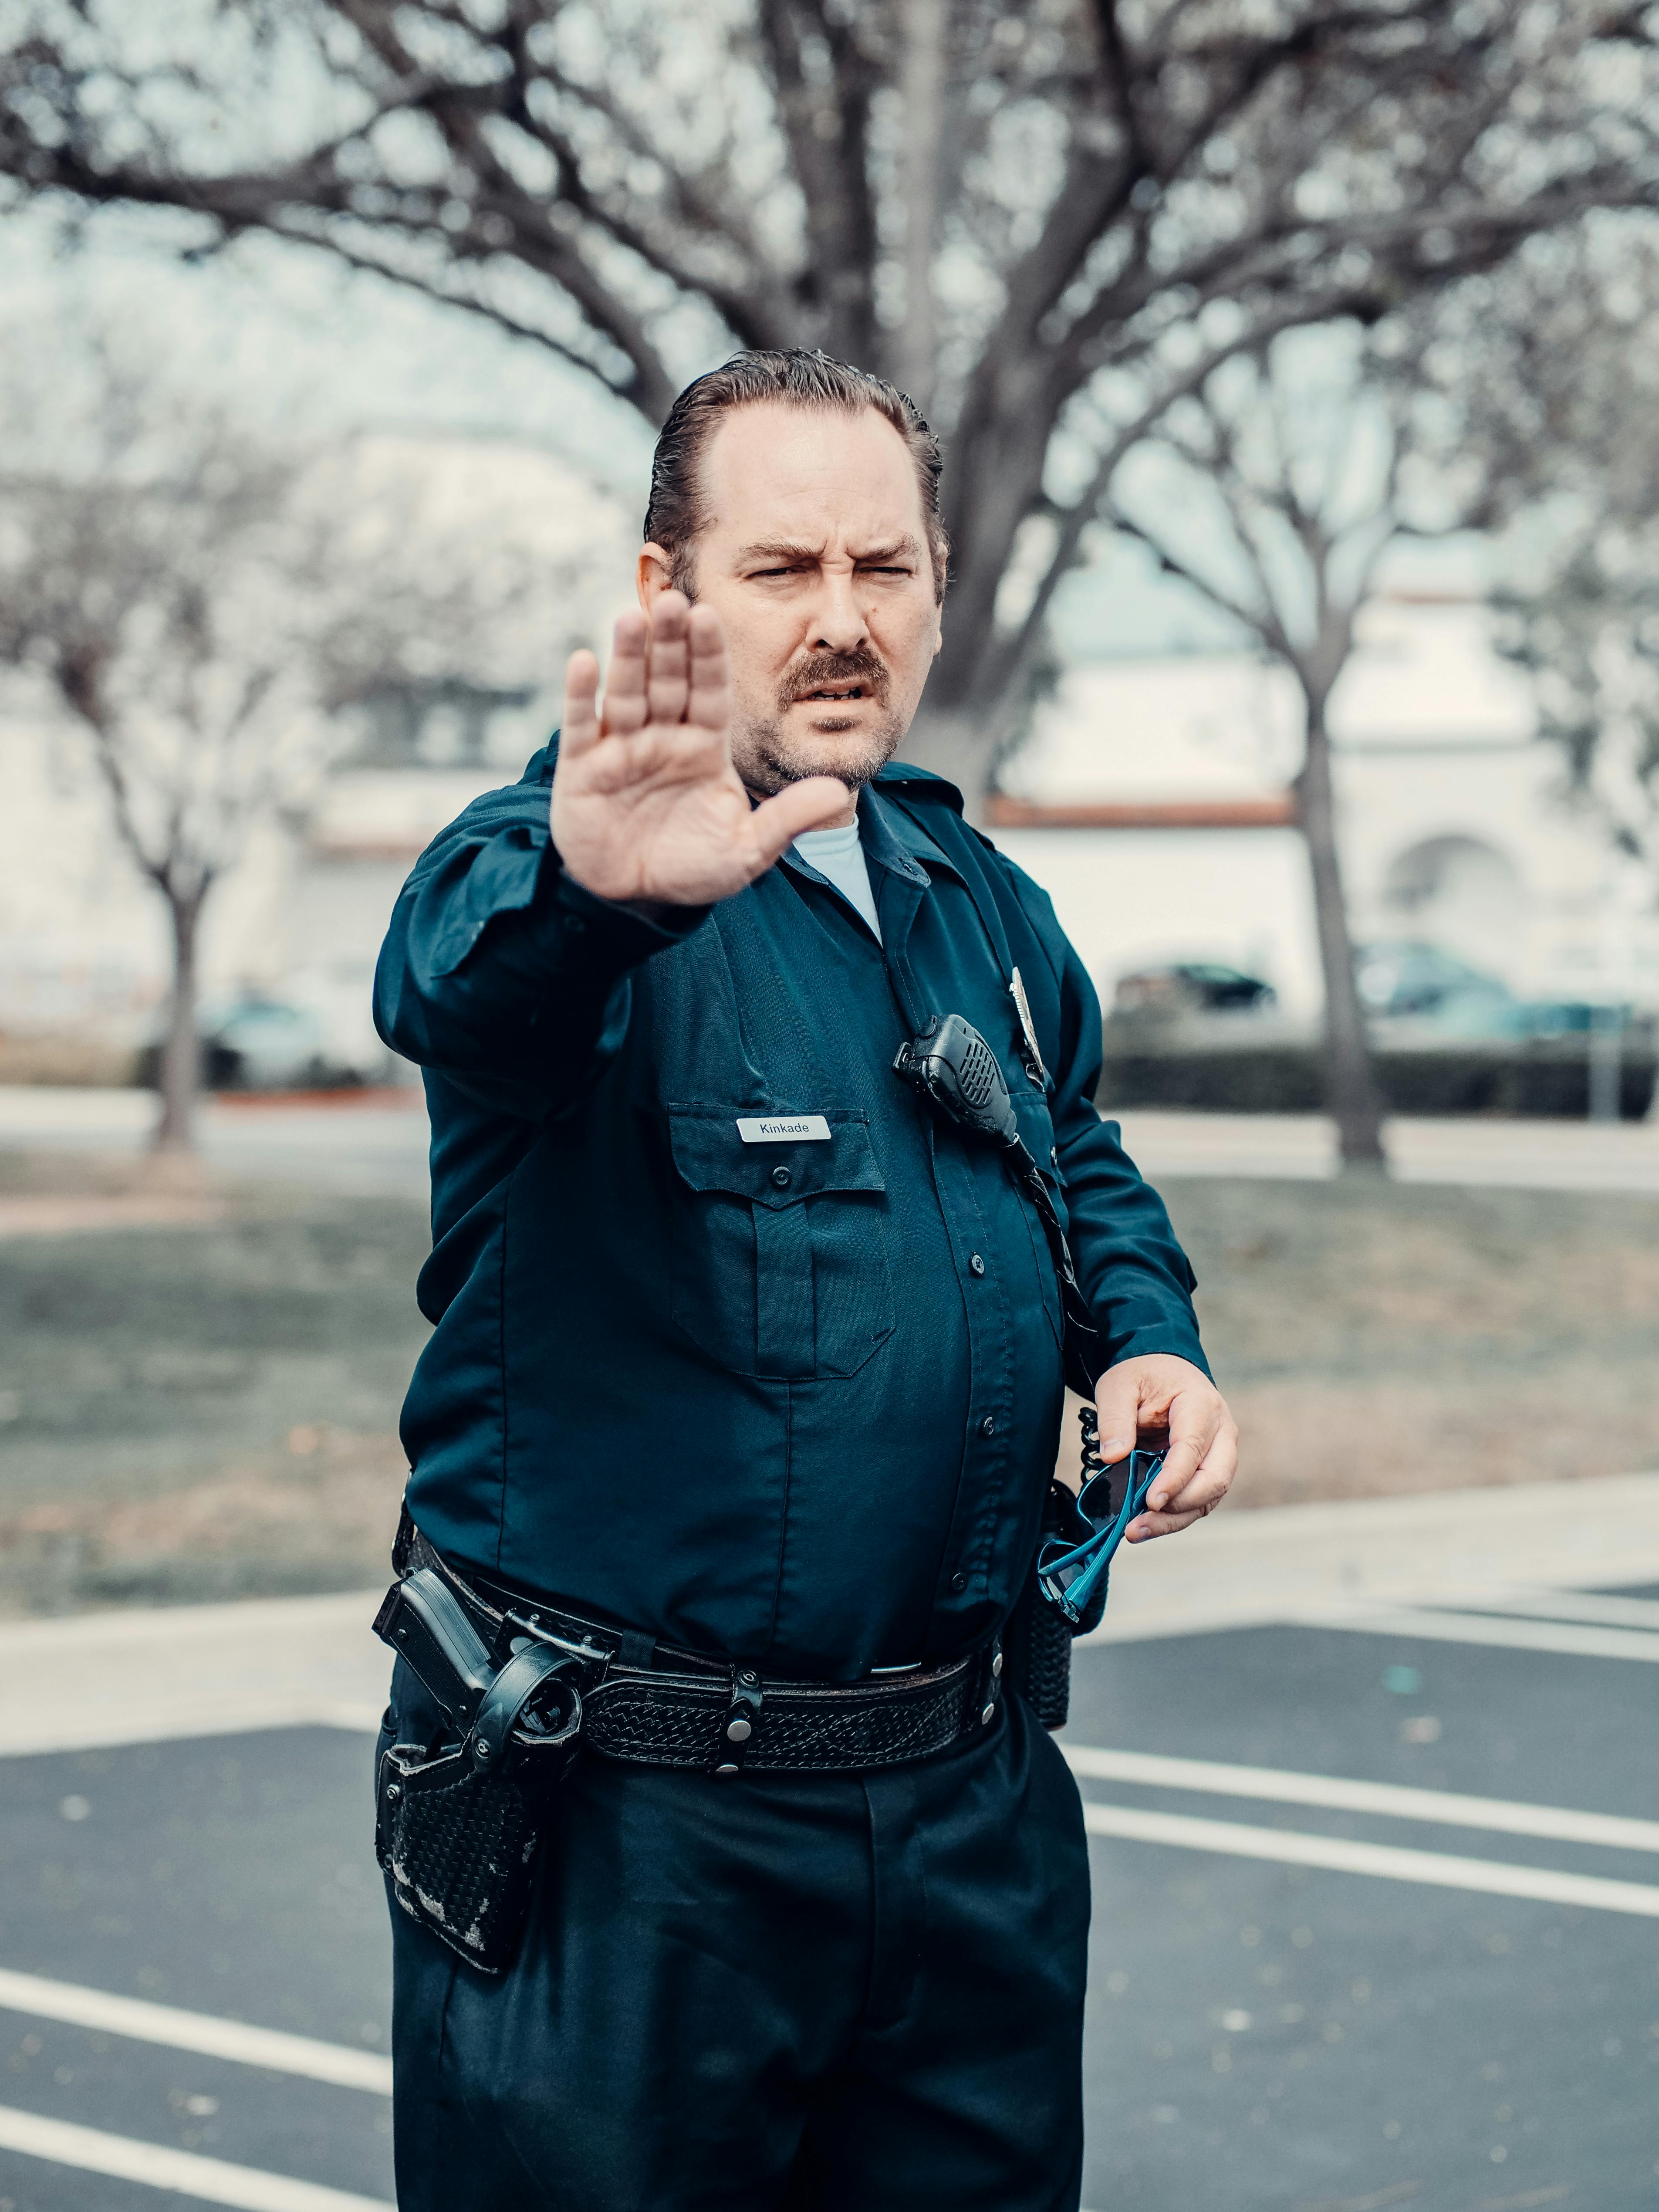 Un policier qui arrête quelqu'un | Source : Pexels